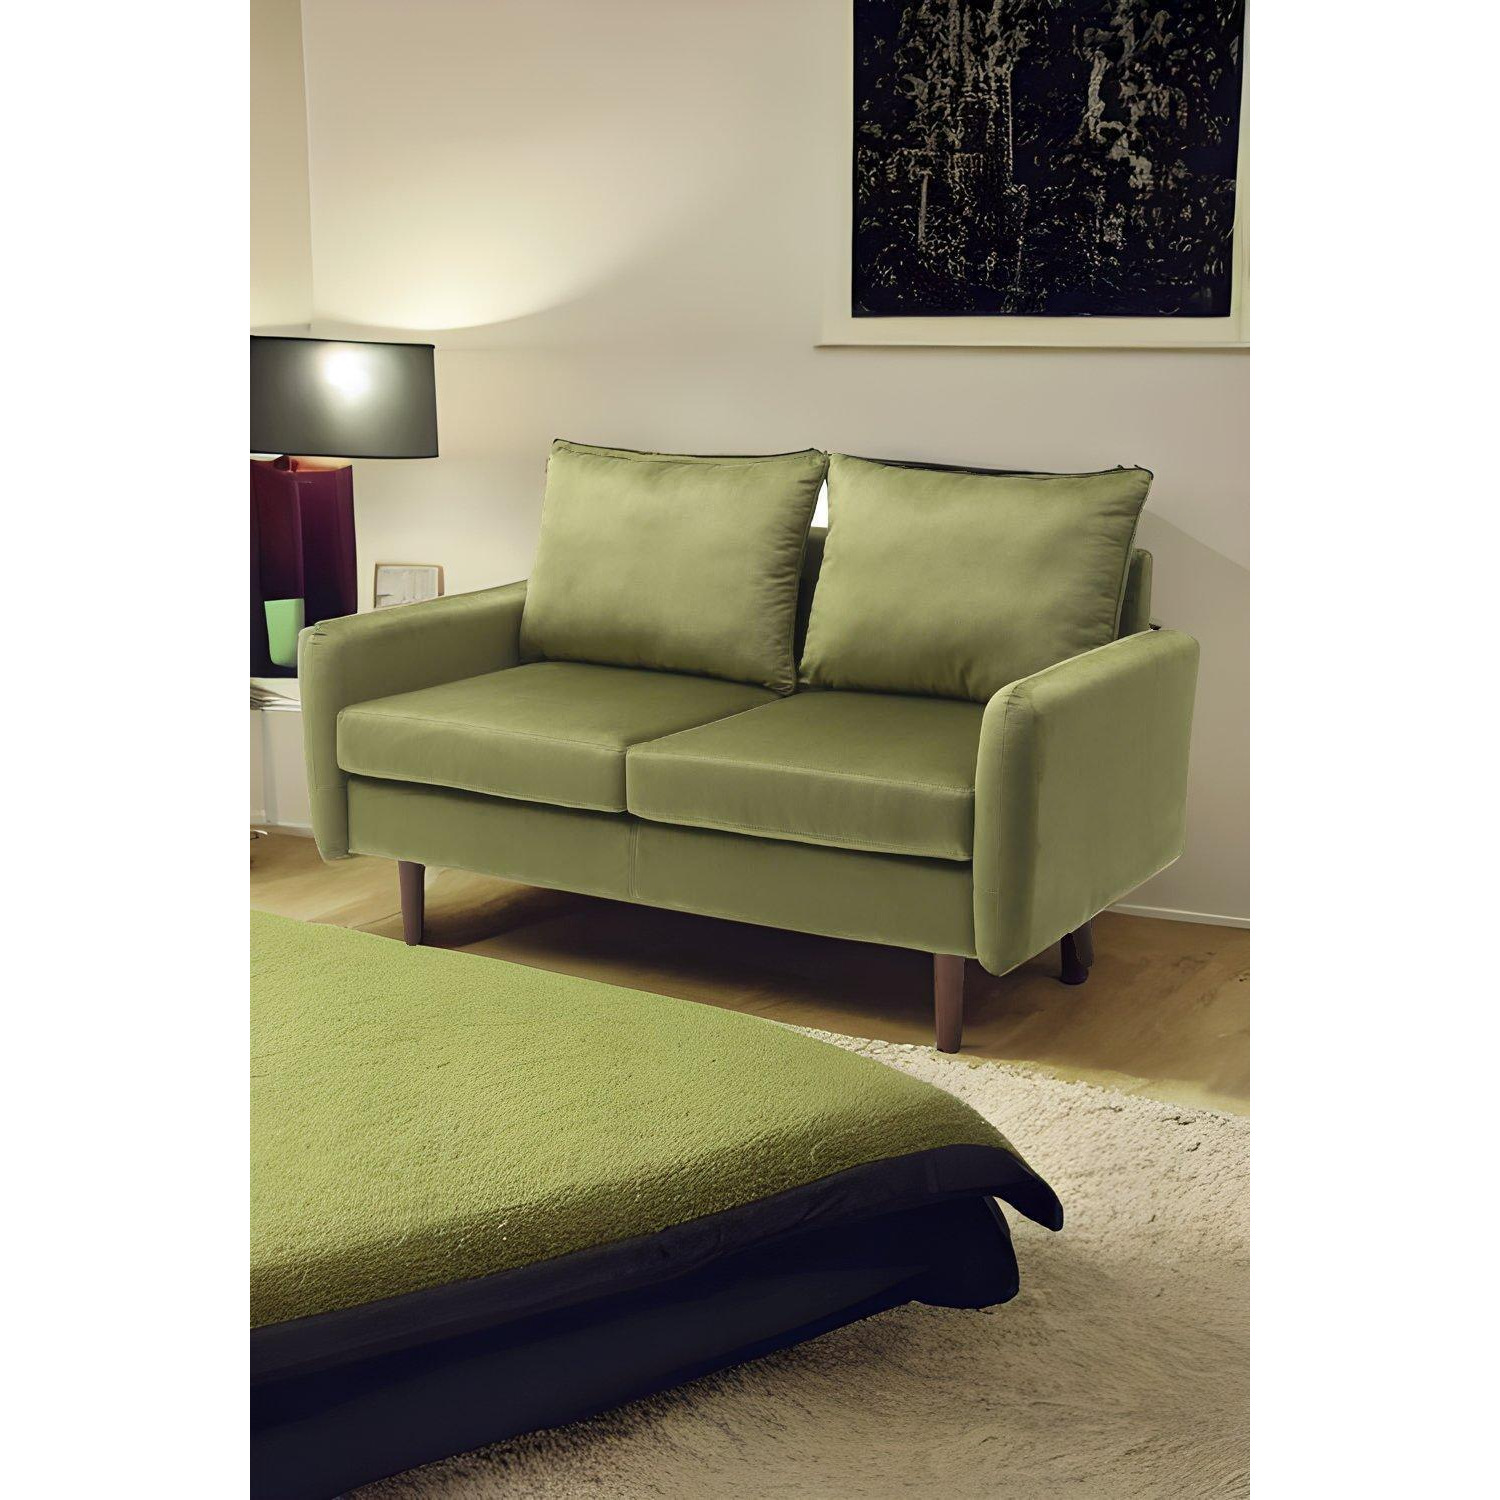 2-Seat Green Velvet Upholstered Sofa for Living Room - image 1